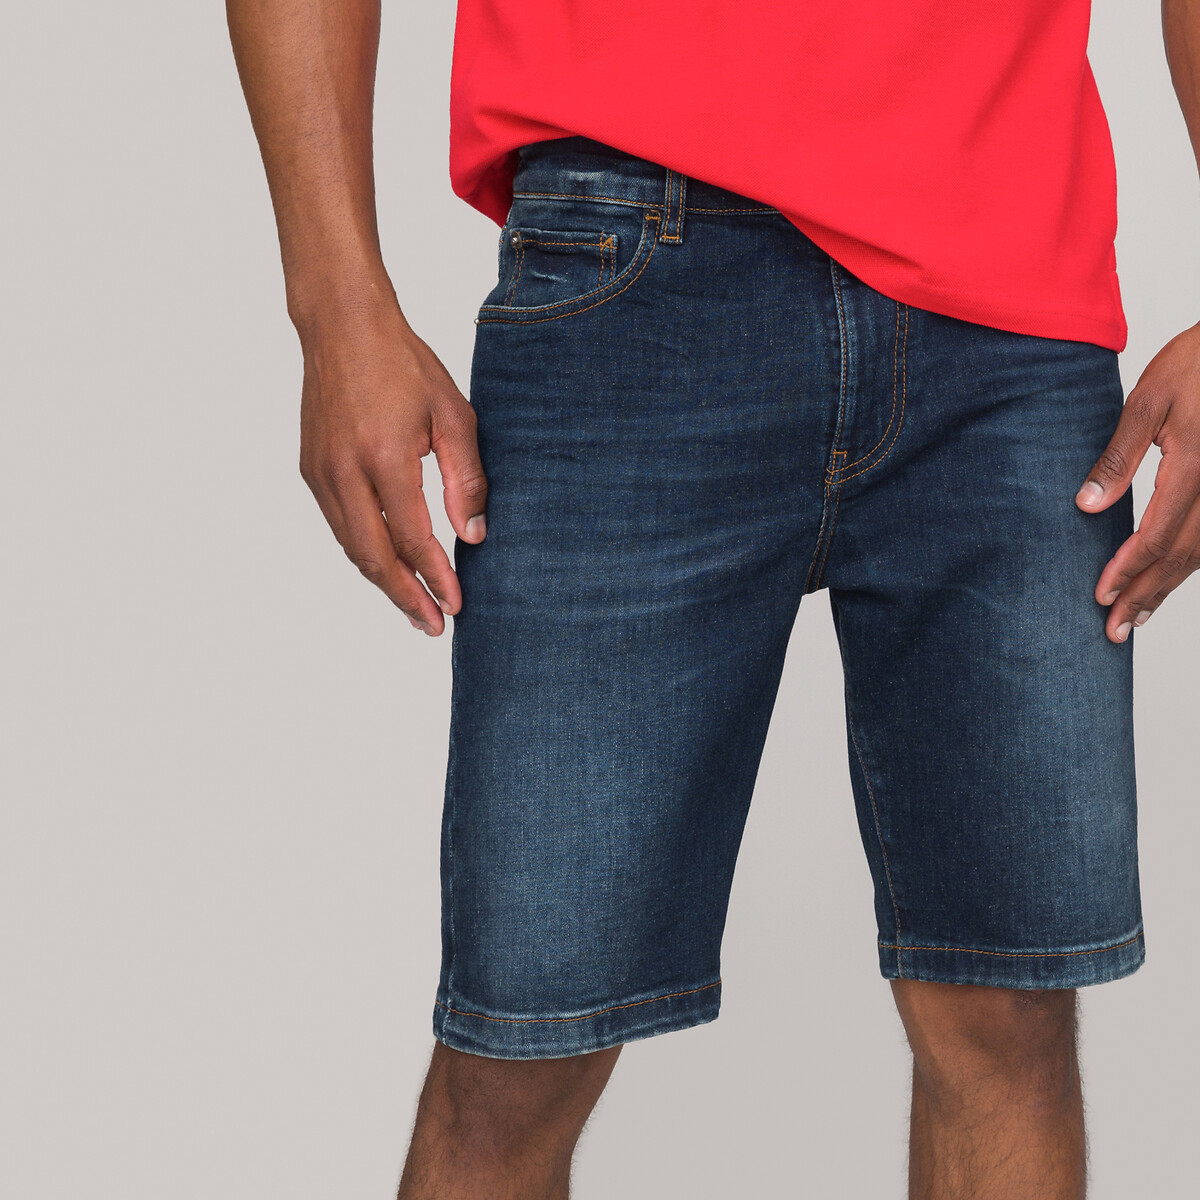 La Redoute Vêtements Pantalons & Jeans Pantalons courts Bermudas Bermuda de seersucker avec doublure souple. 